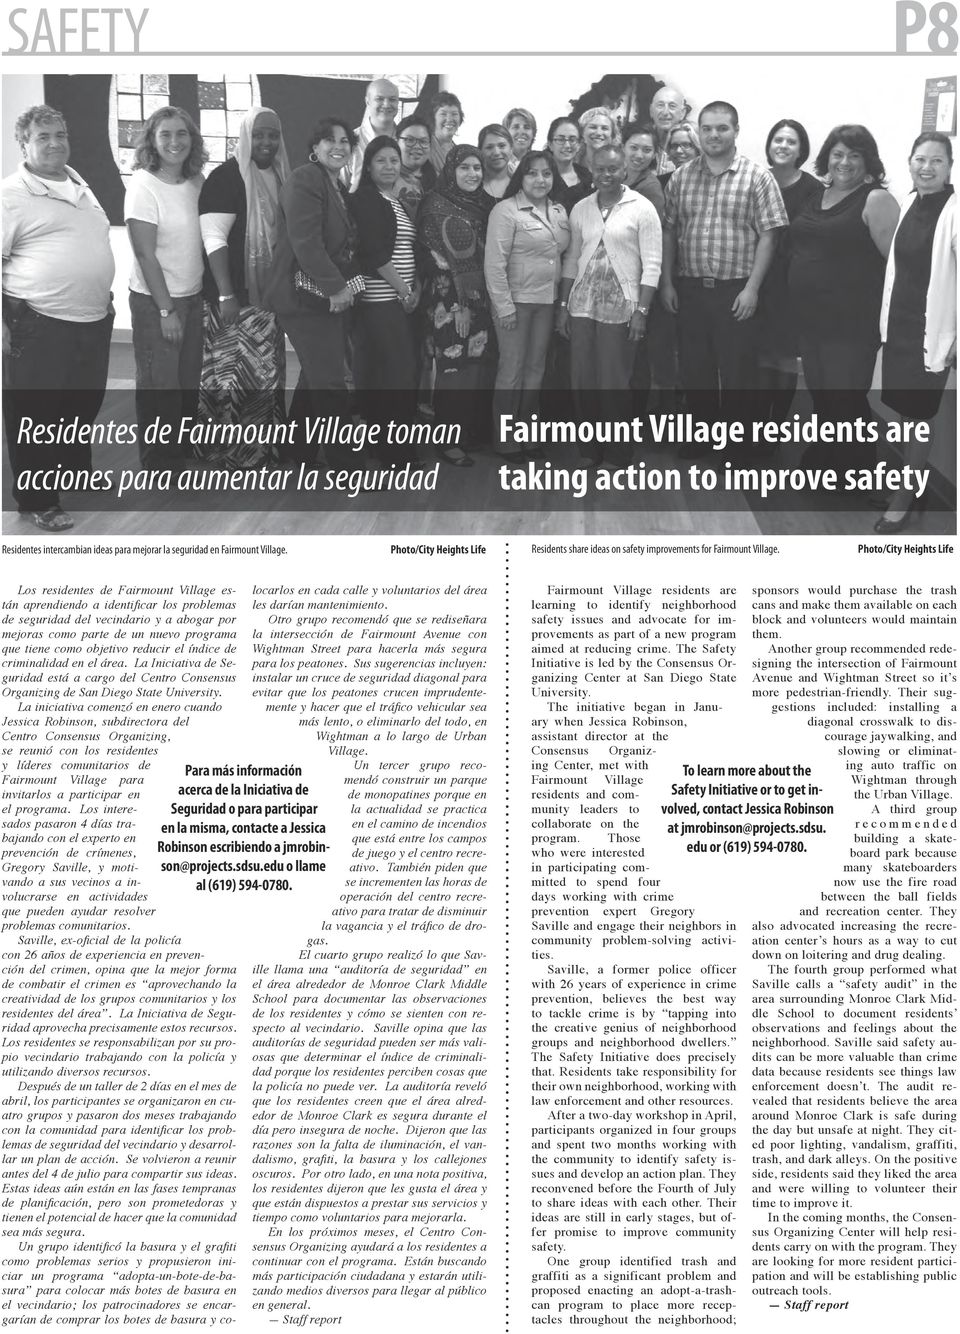 Photo/City Heights Life Los residentes de Fairmount Village están aprendiendo a identificar los problemas de seguridad del vecindario y a abogar por mejoras como parte de un nuevo programa que tiene